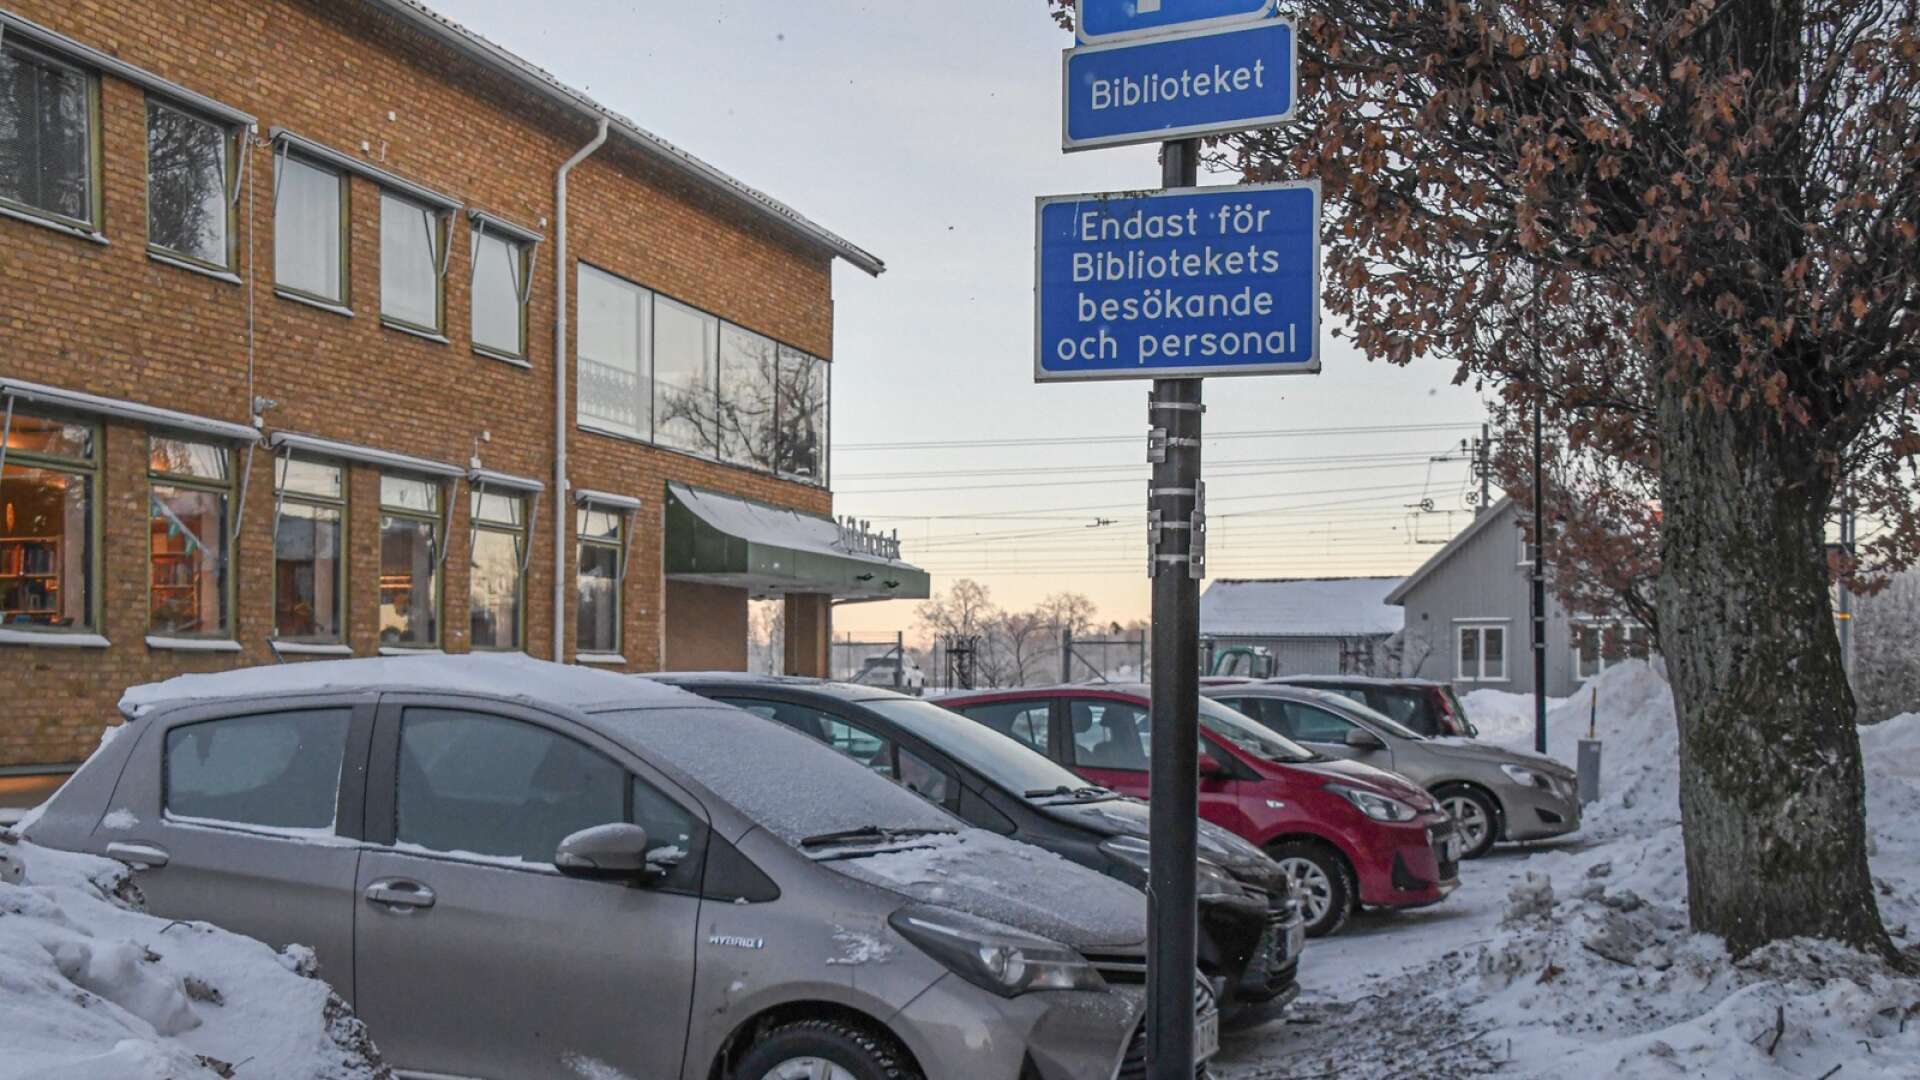 Parkeringsplatserna utanför Töreboda bibliotek är endast avsedda för bibliotekets besökare och personal. Det respekteras dåligt, enligt bibliotekschefen.